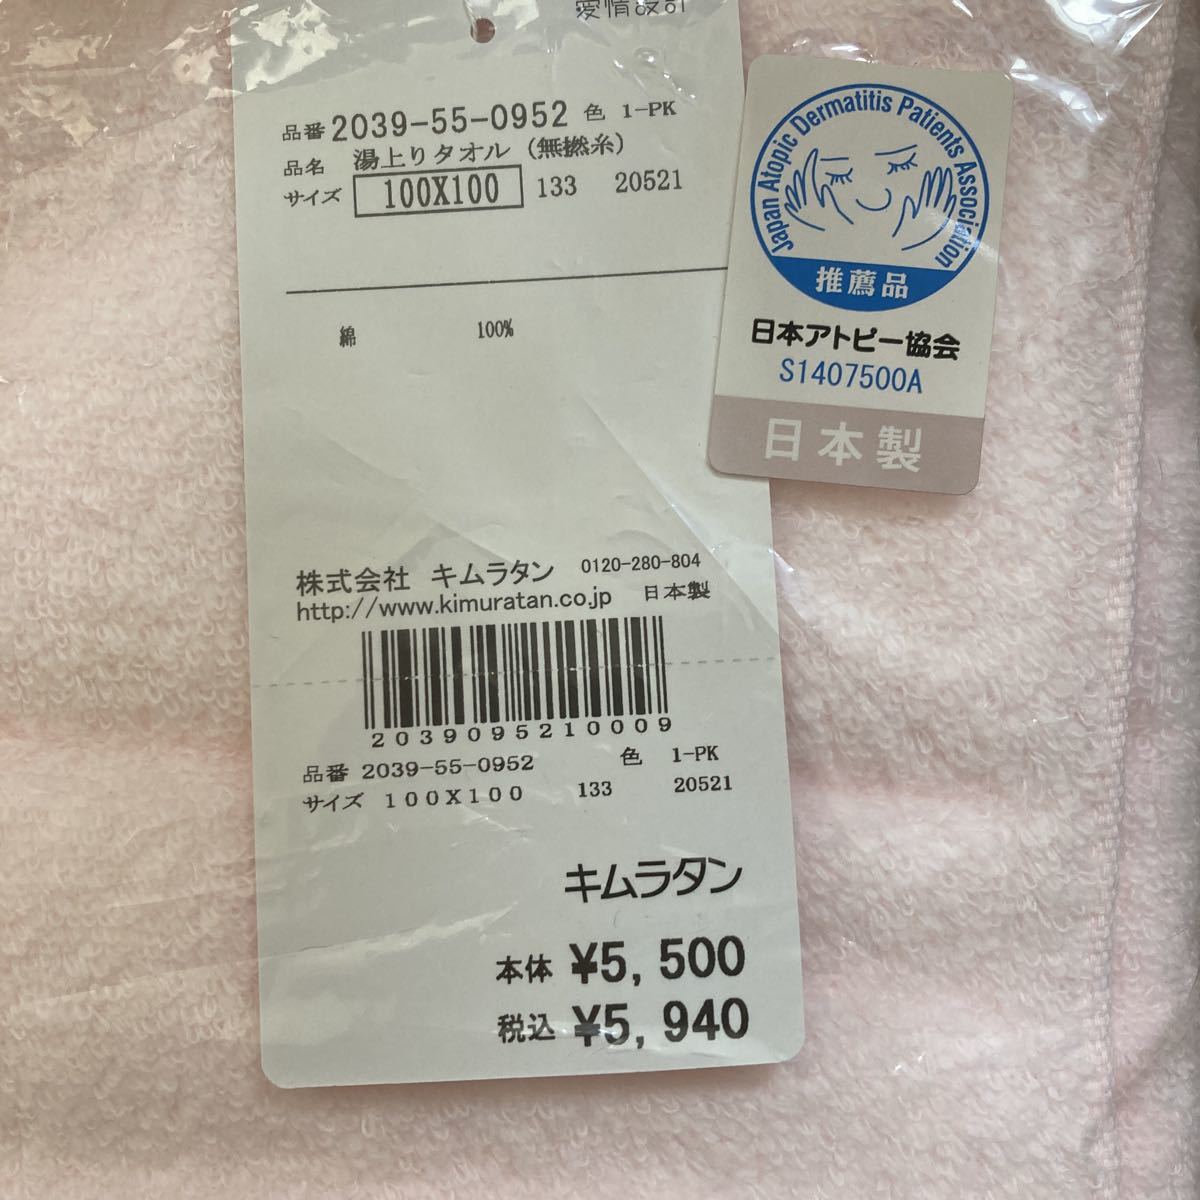  младенец горячая вода израсходованный полотенце нет . нить 100x100 сделано в Японии атопия ассоциация Kim ротанг незначительный розовый добрый материалы новый товар нераспечатанный 